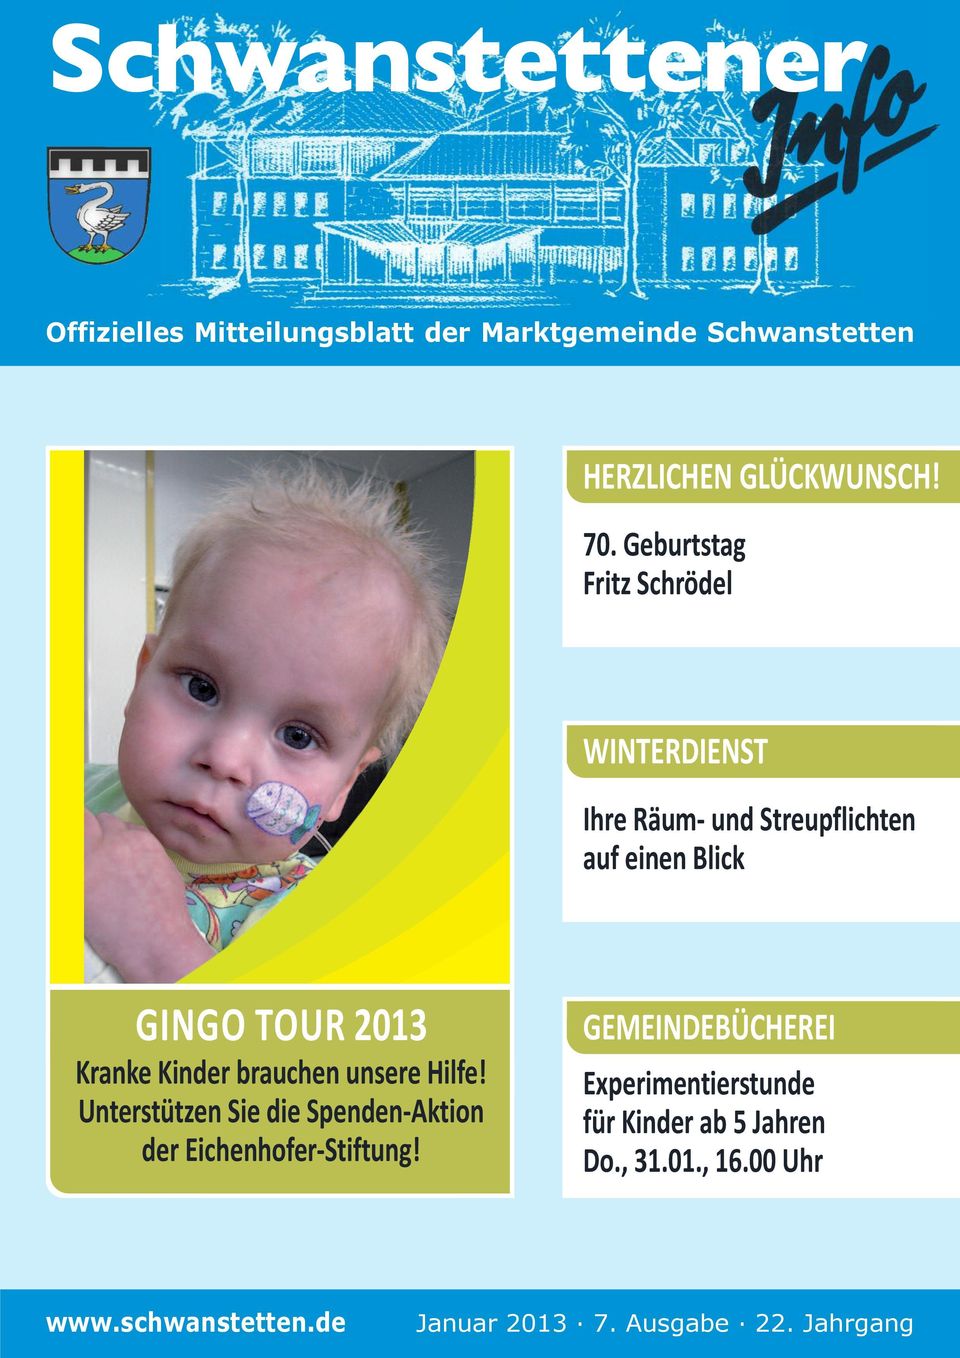 Kinder brauchen unsere Hilfe! Unterstützen Sie die Spenden-Aktion der Eichenhofer-Stiftung!